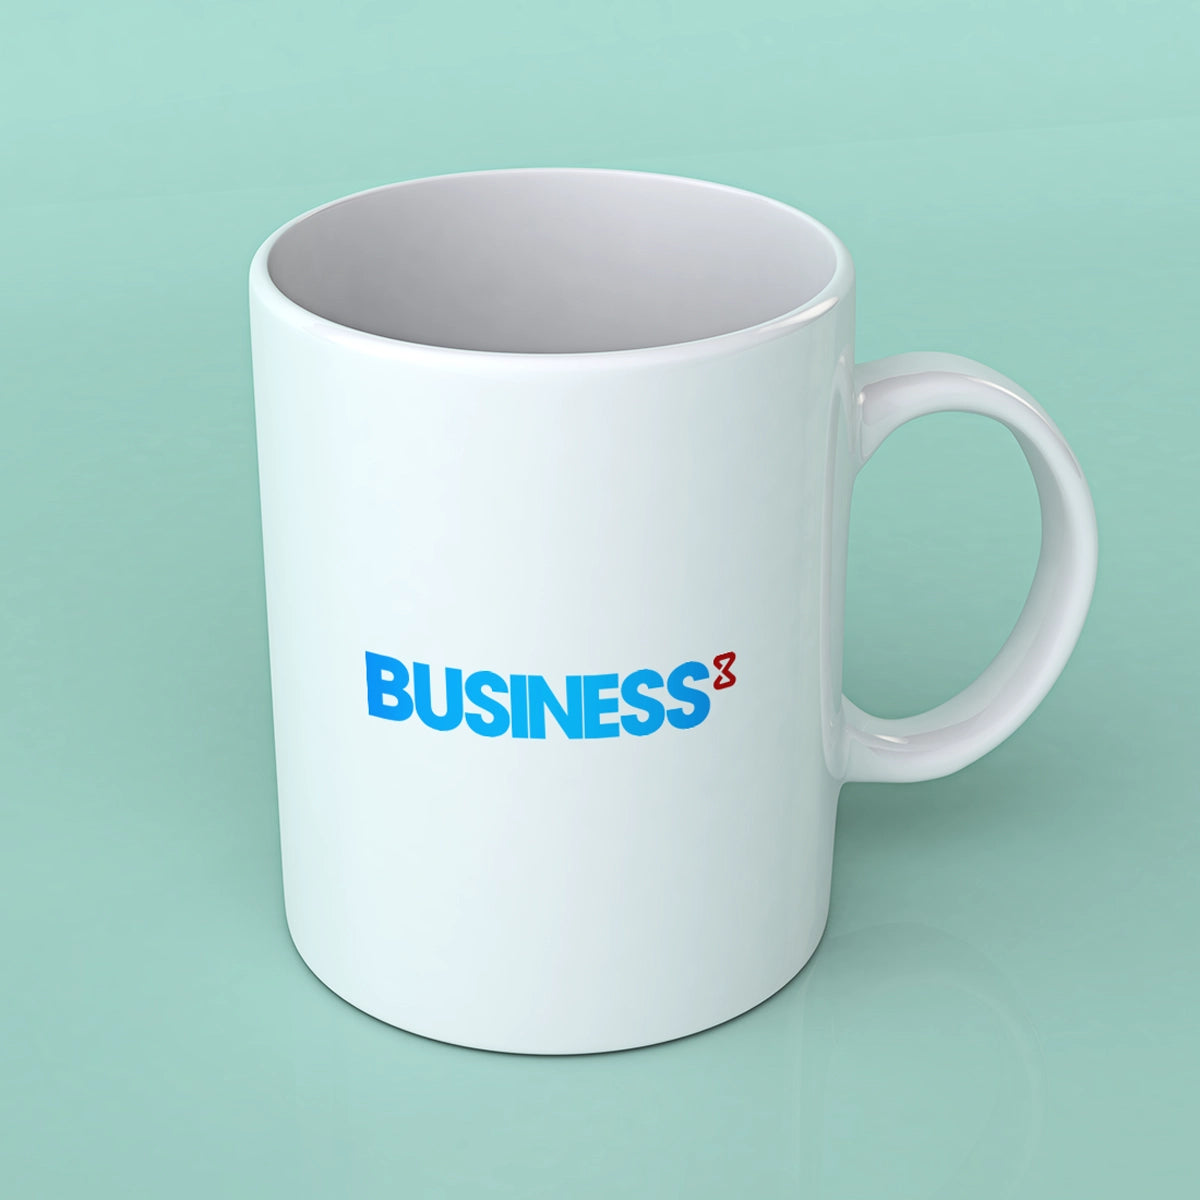 business3.com